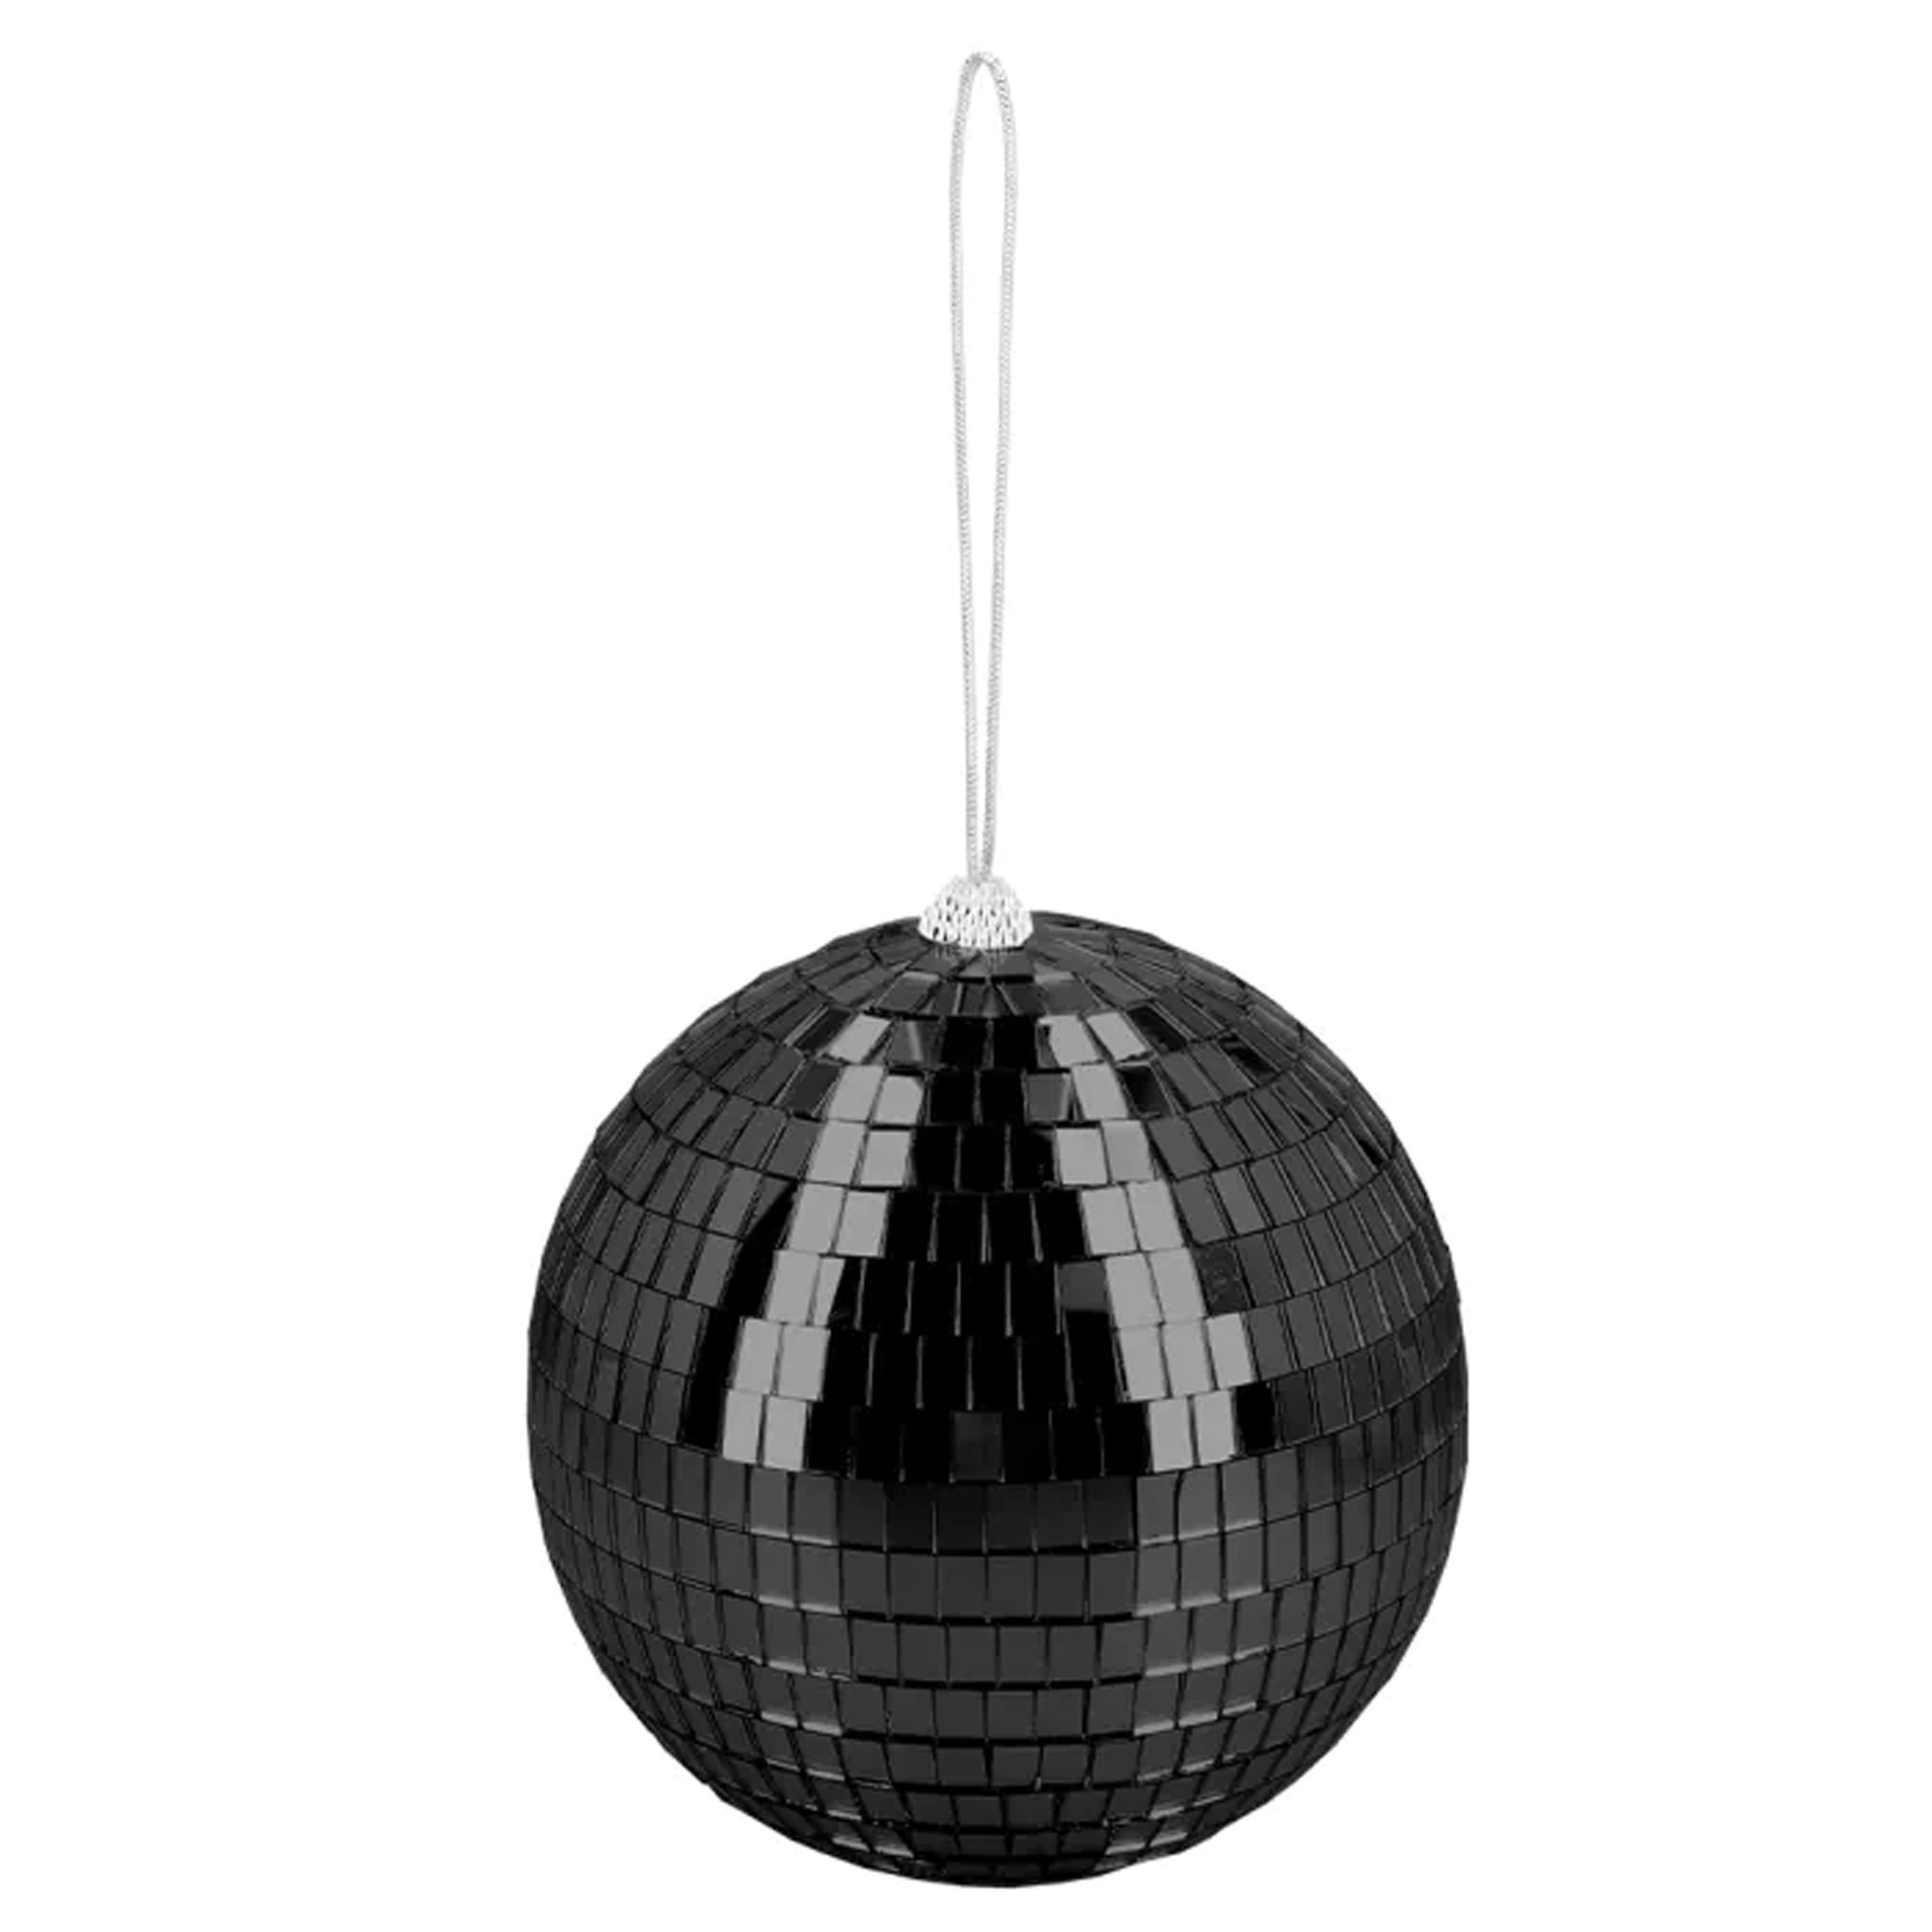 Disco spiegel bal rond zwart Dia 15 cm Seventies-eighties thema versiering